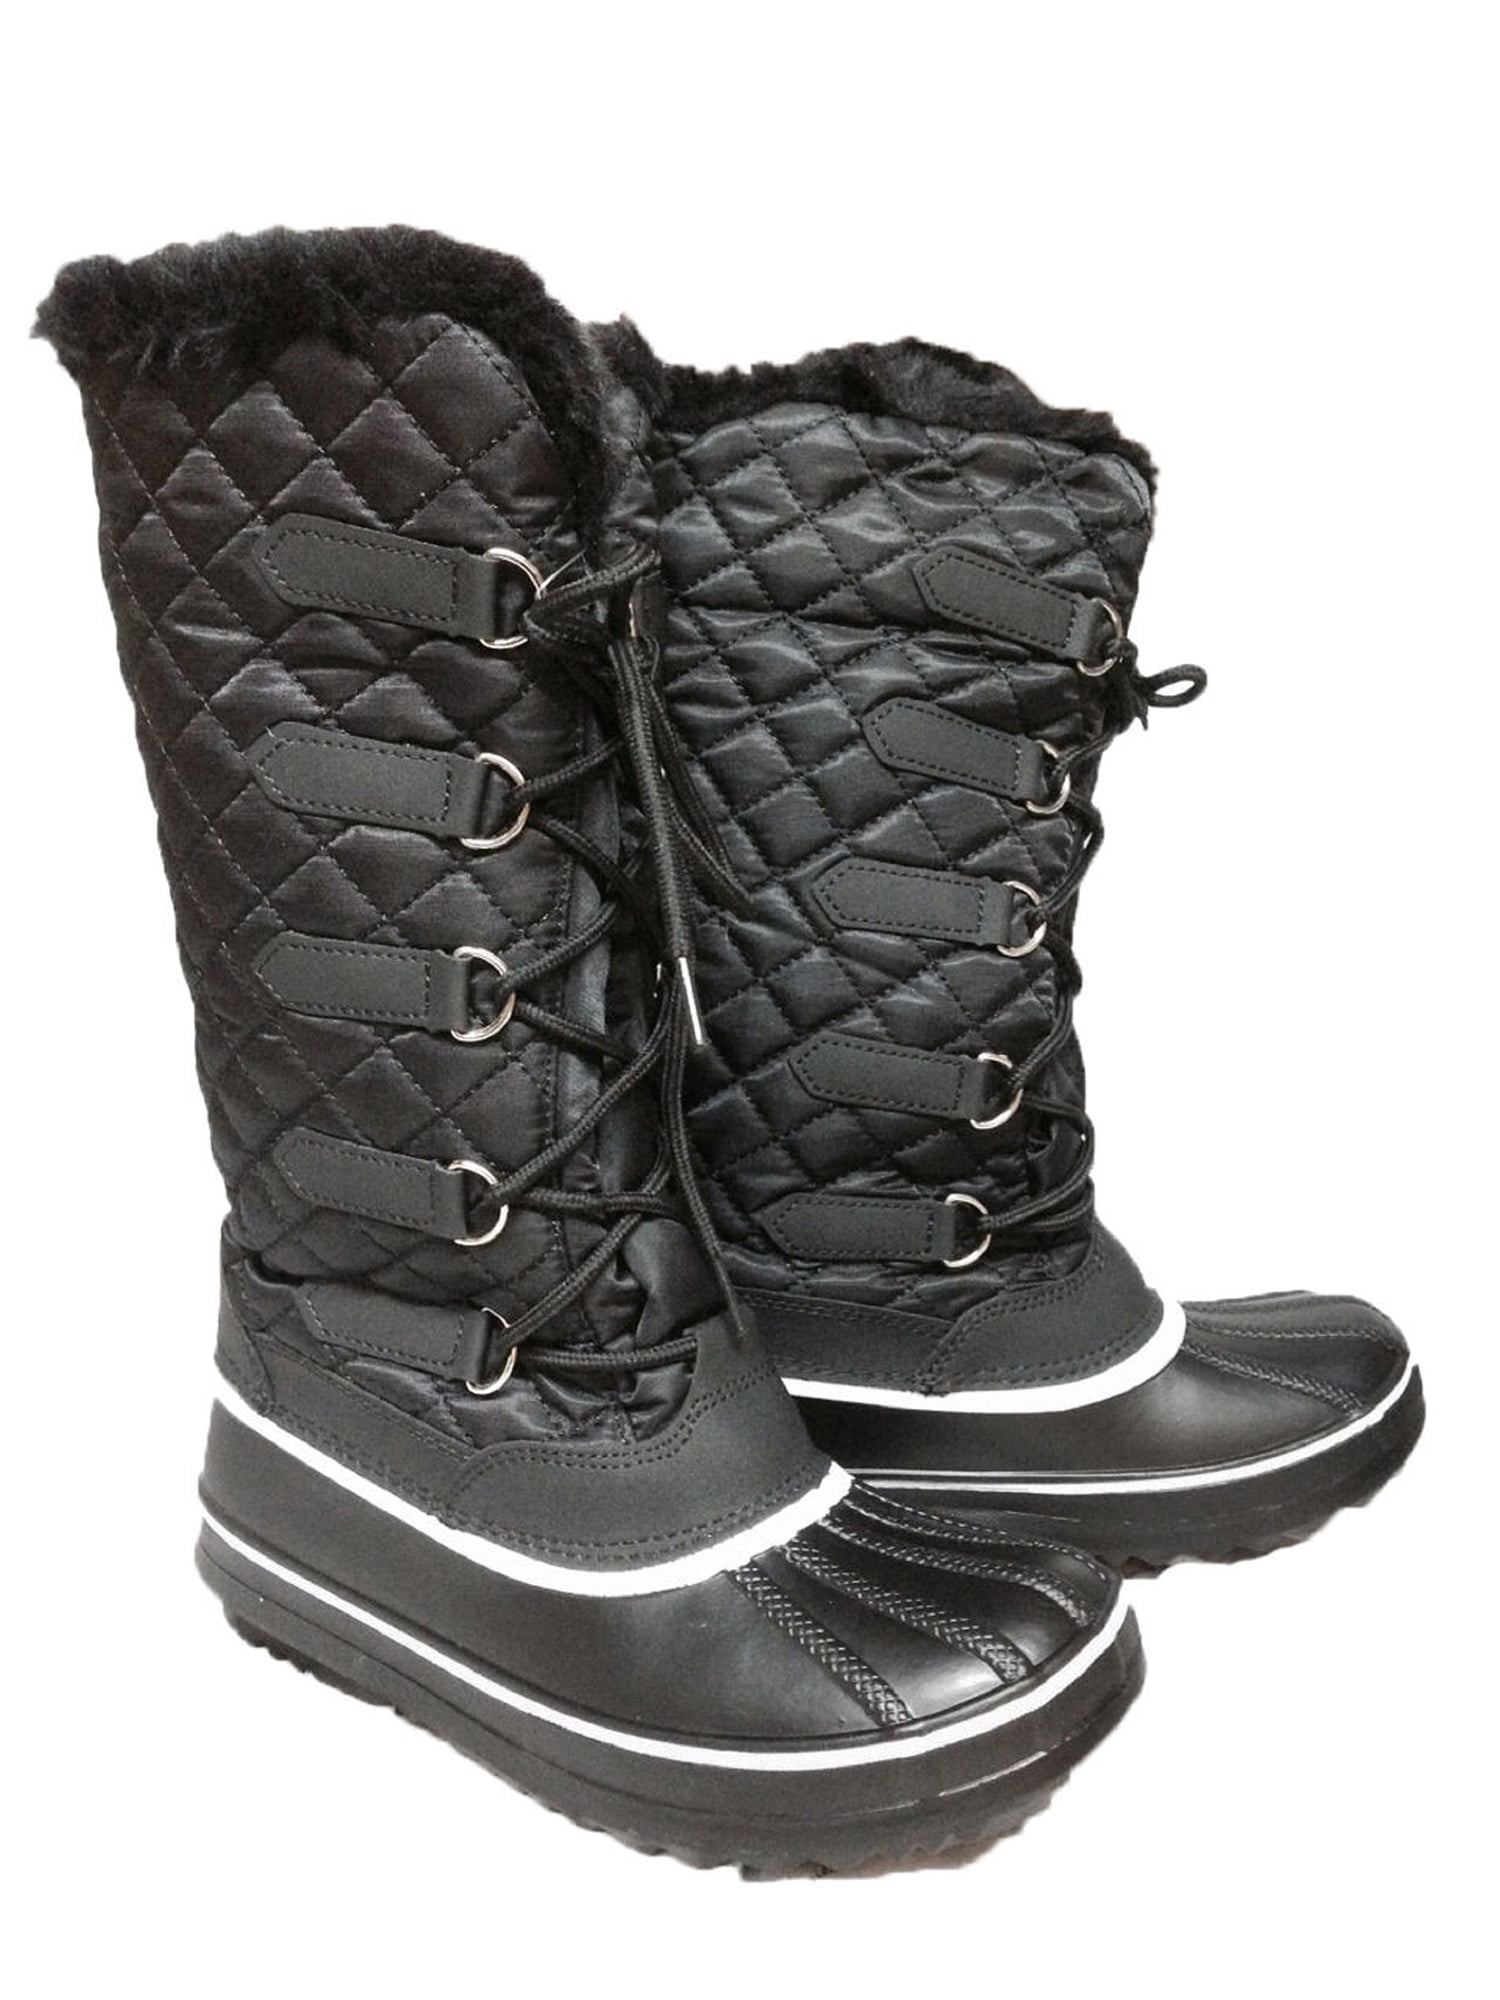 water resistant boots walmart